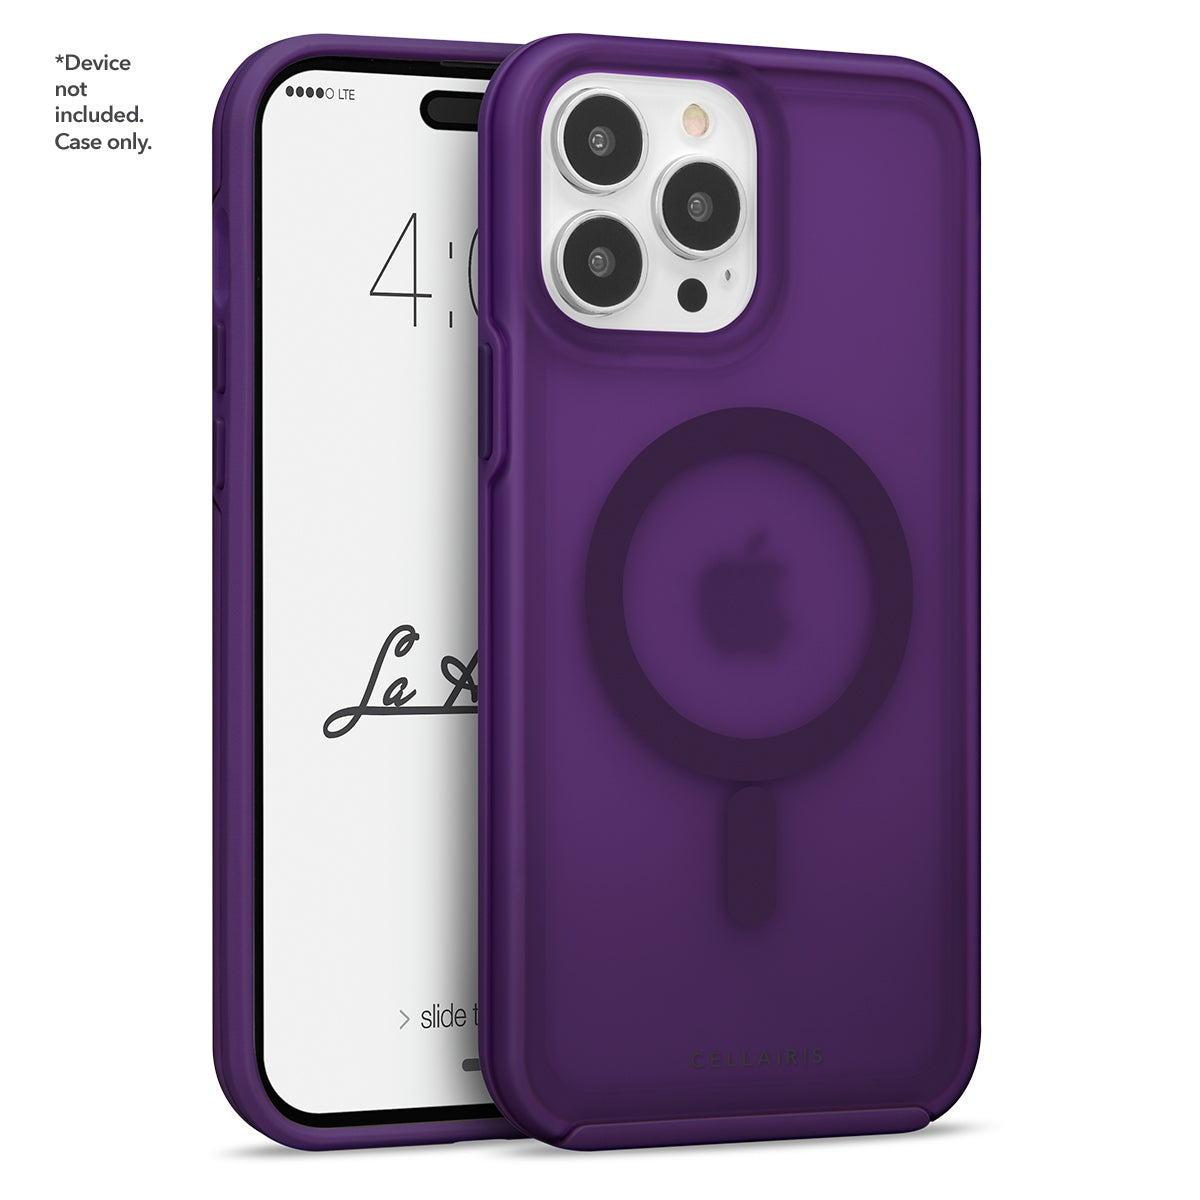 La Hornet Matte - iPhone 15 Pro Eggplant w/ MagSafe Cases